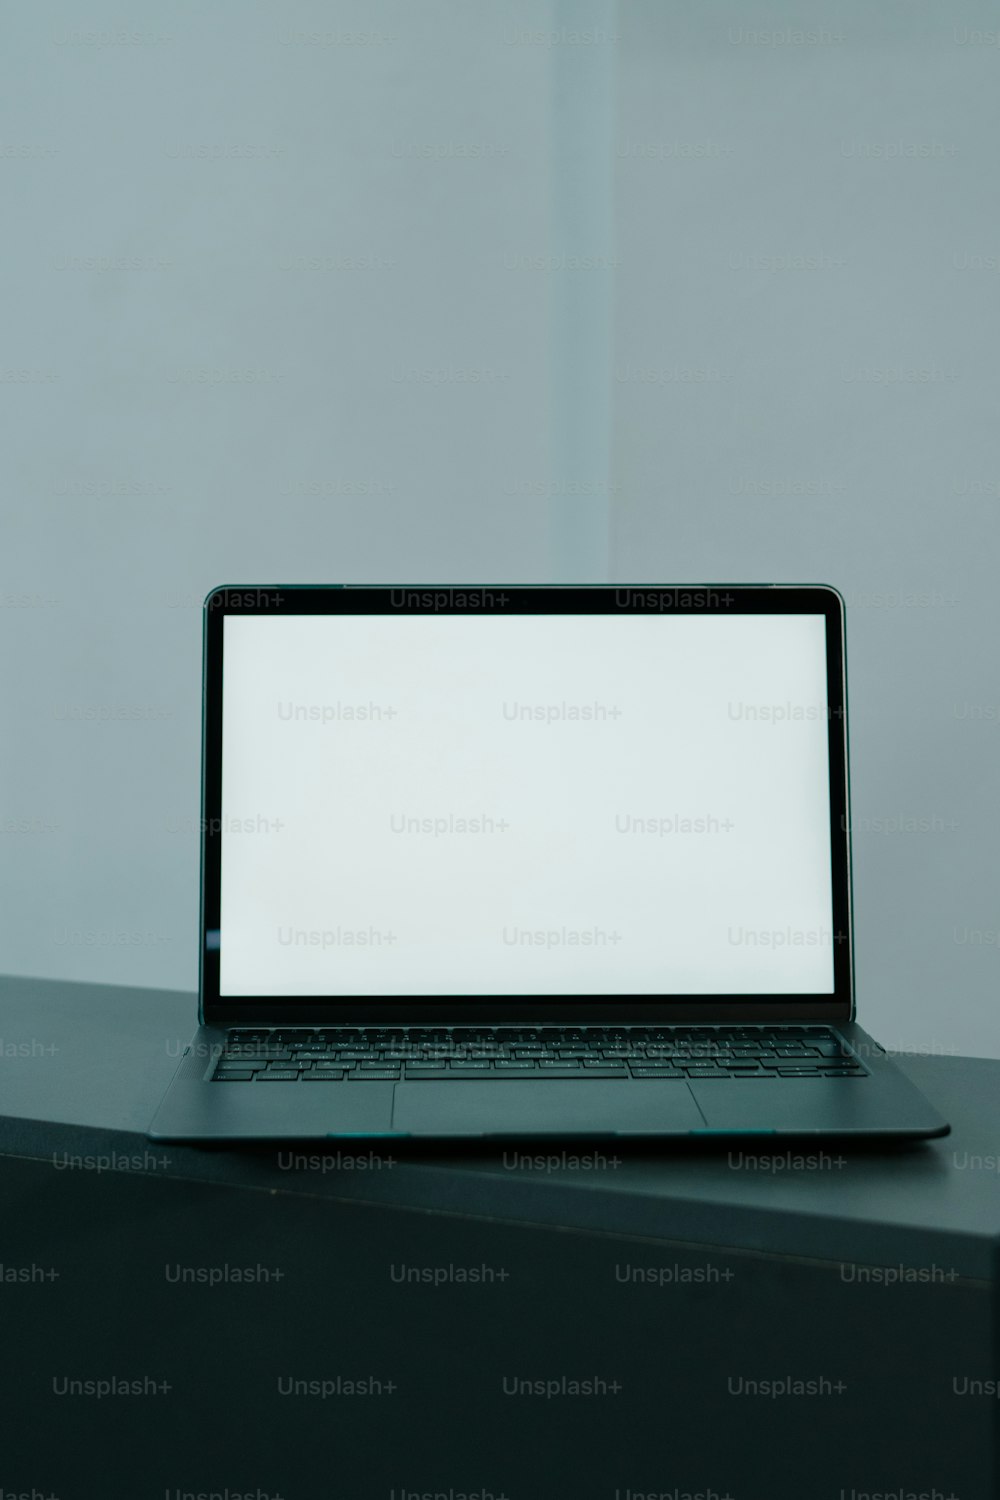 un ordinateur portable posé sur un bureau